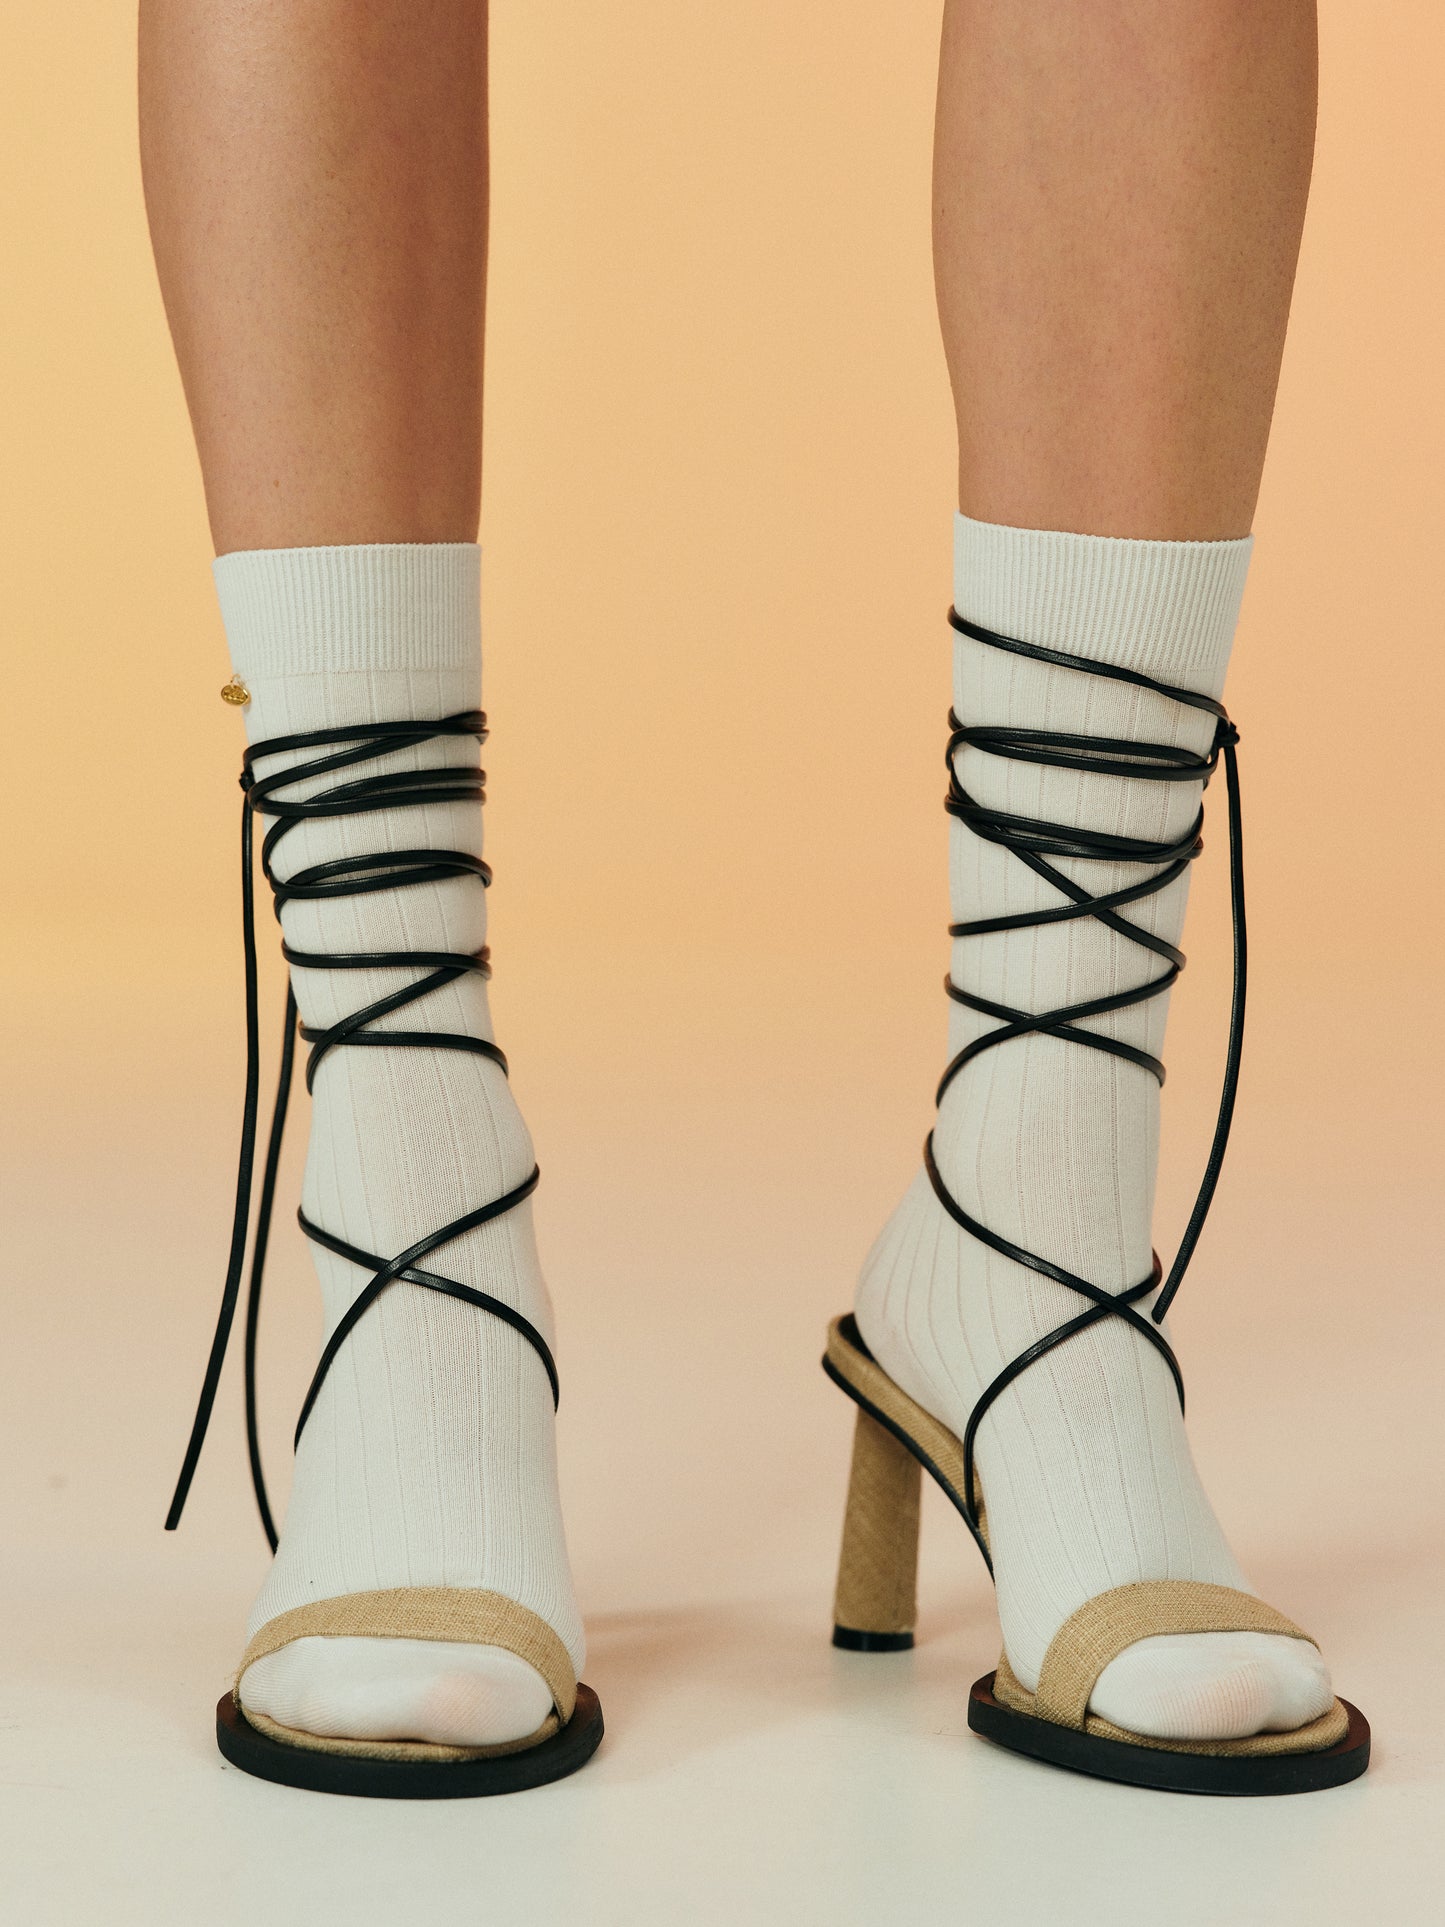 Linen Canvas Ankle Tie Heeled Sandals, Burlap